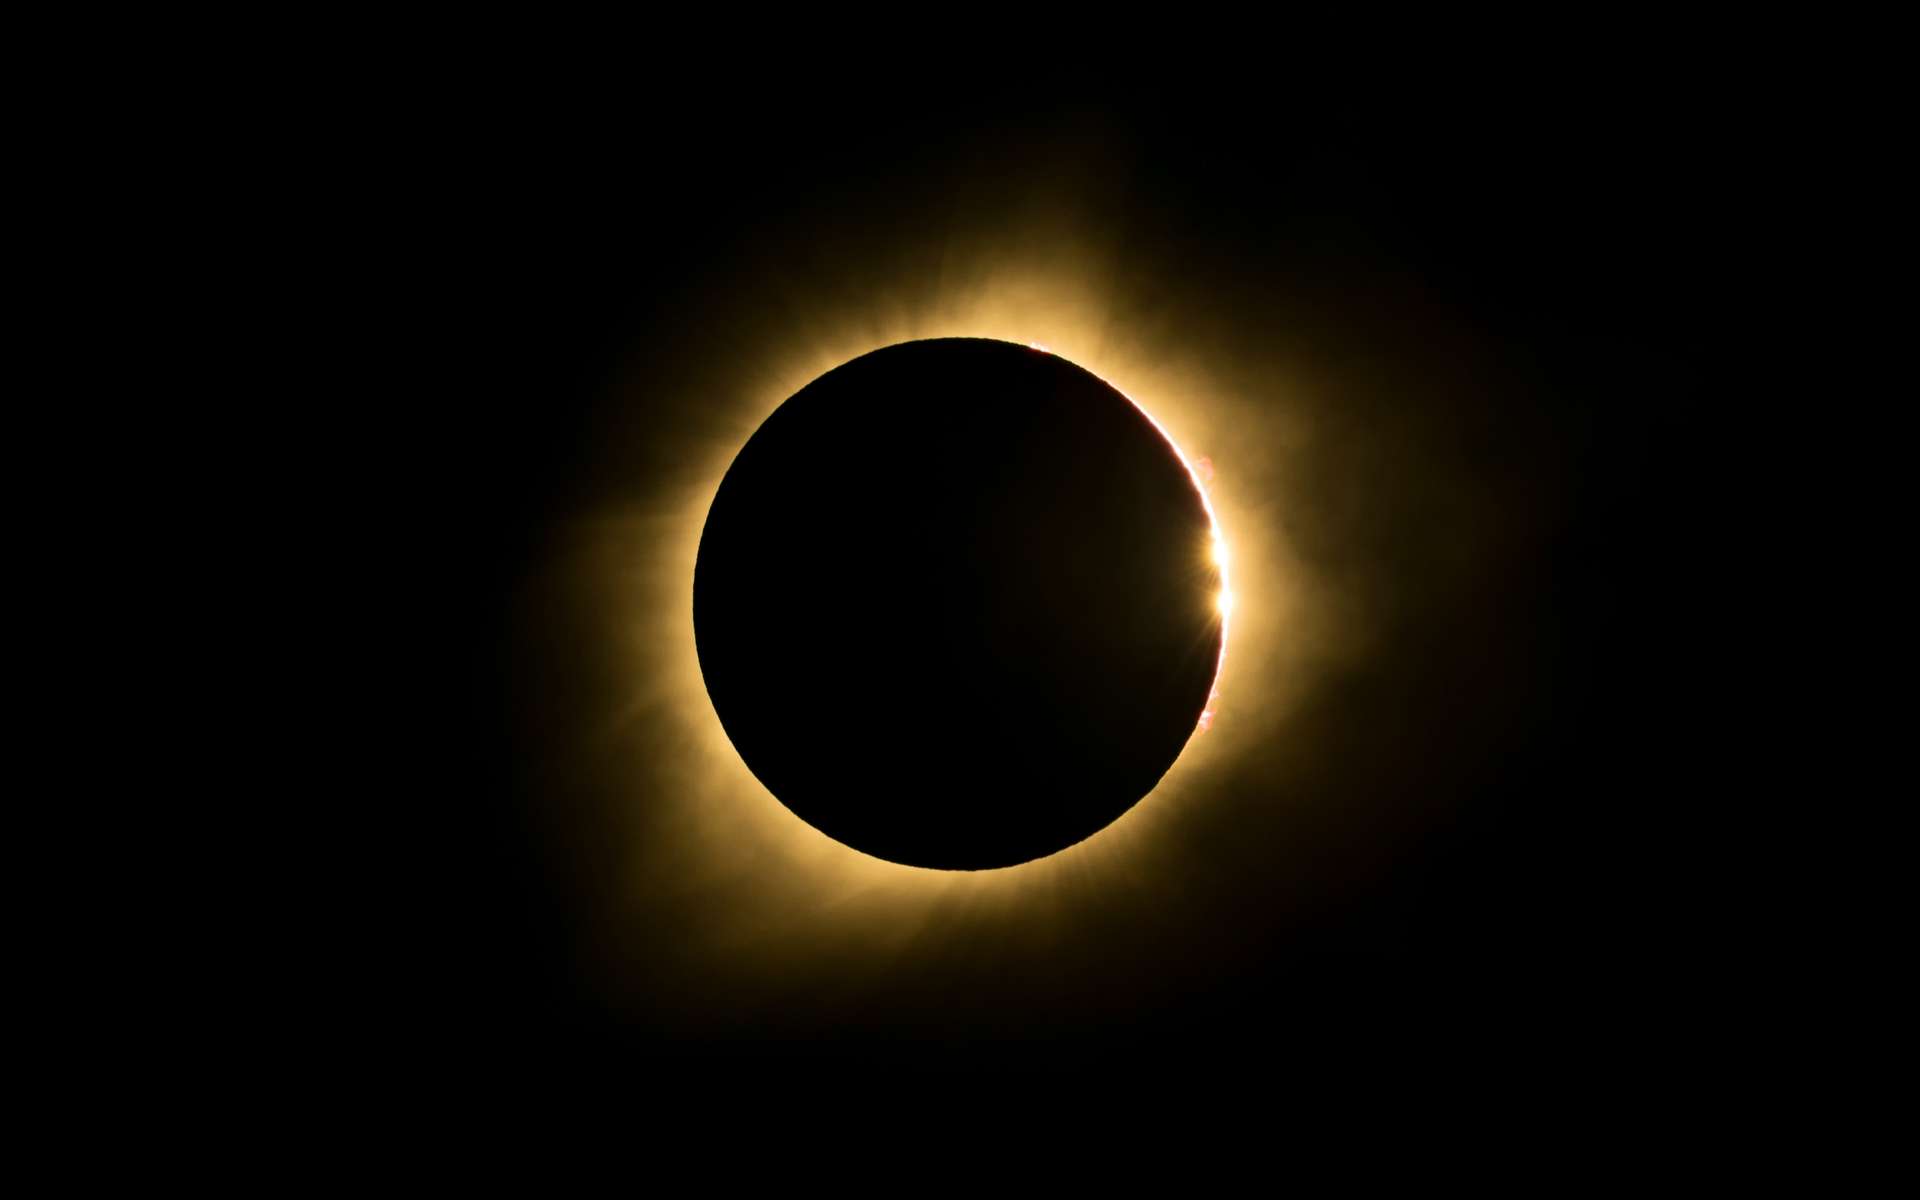 Les plus belles images de l'éclipse totale du Soleil du 14 décembre